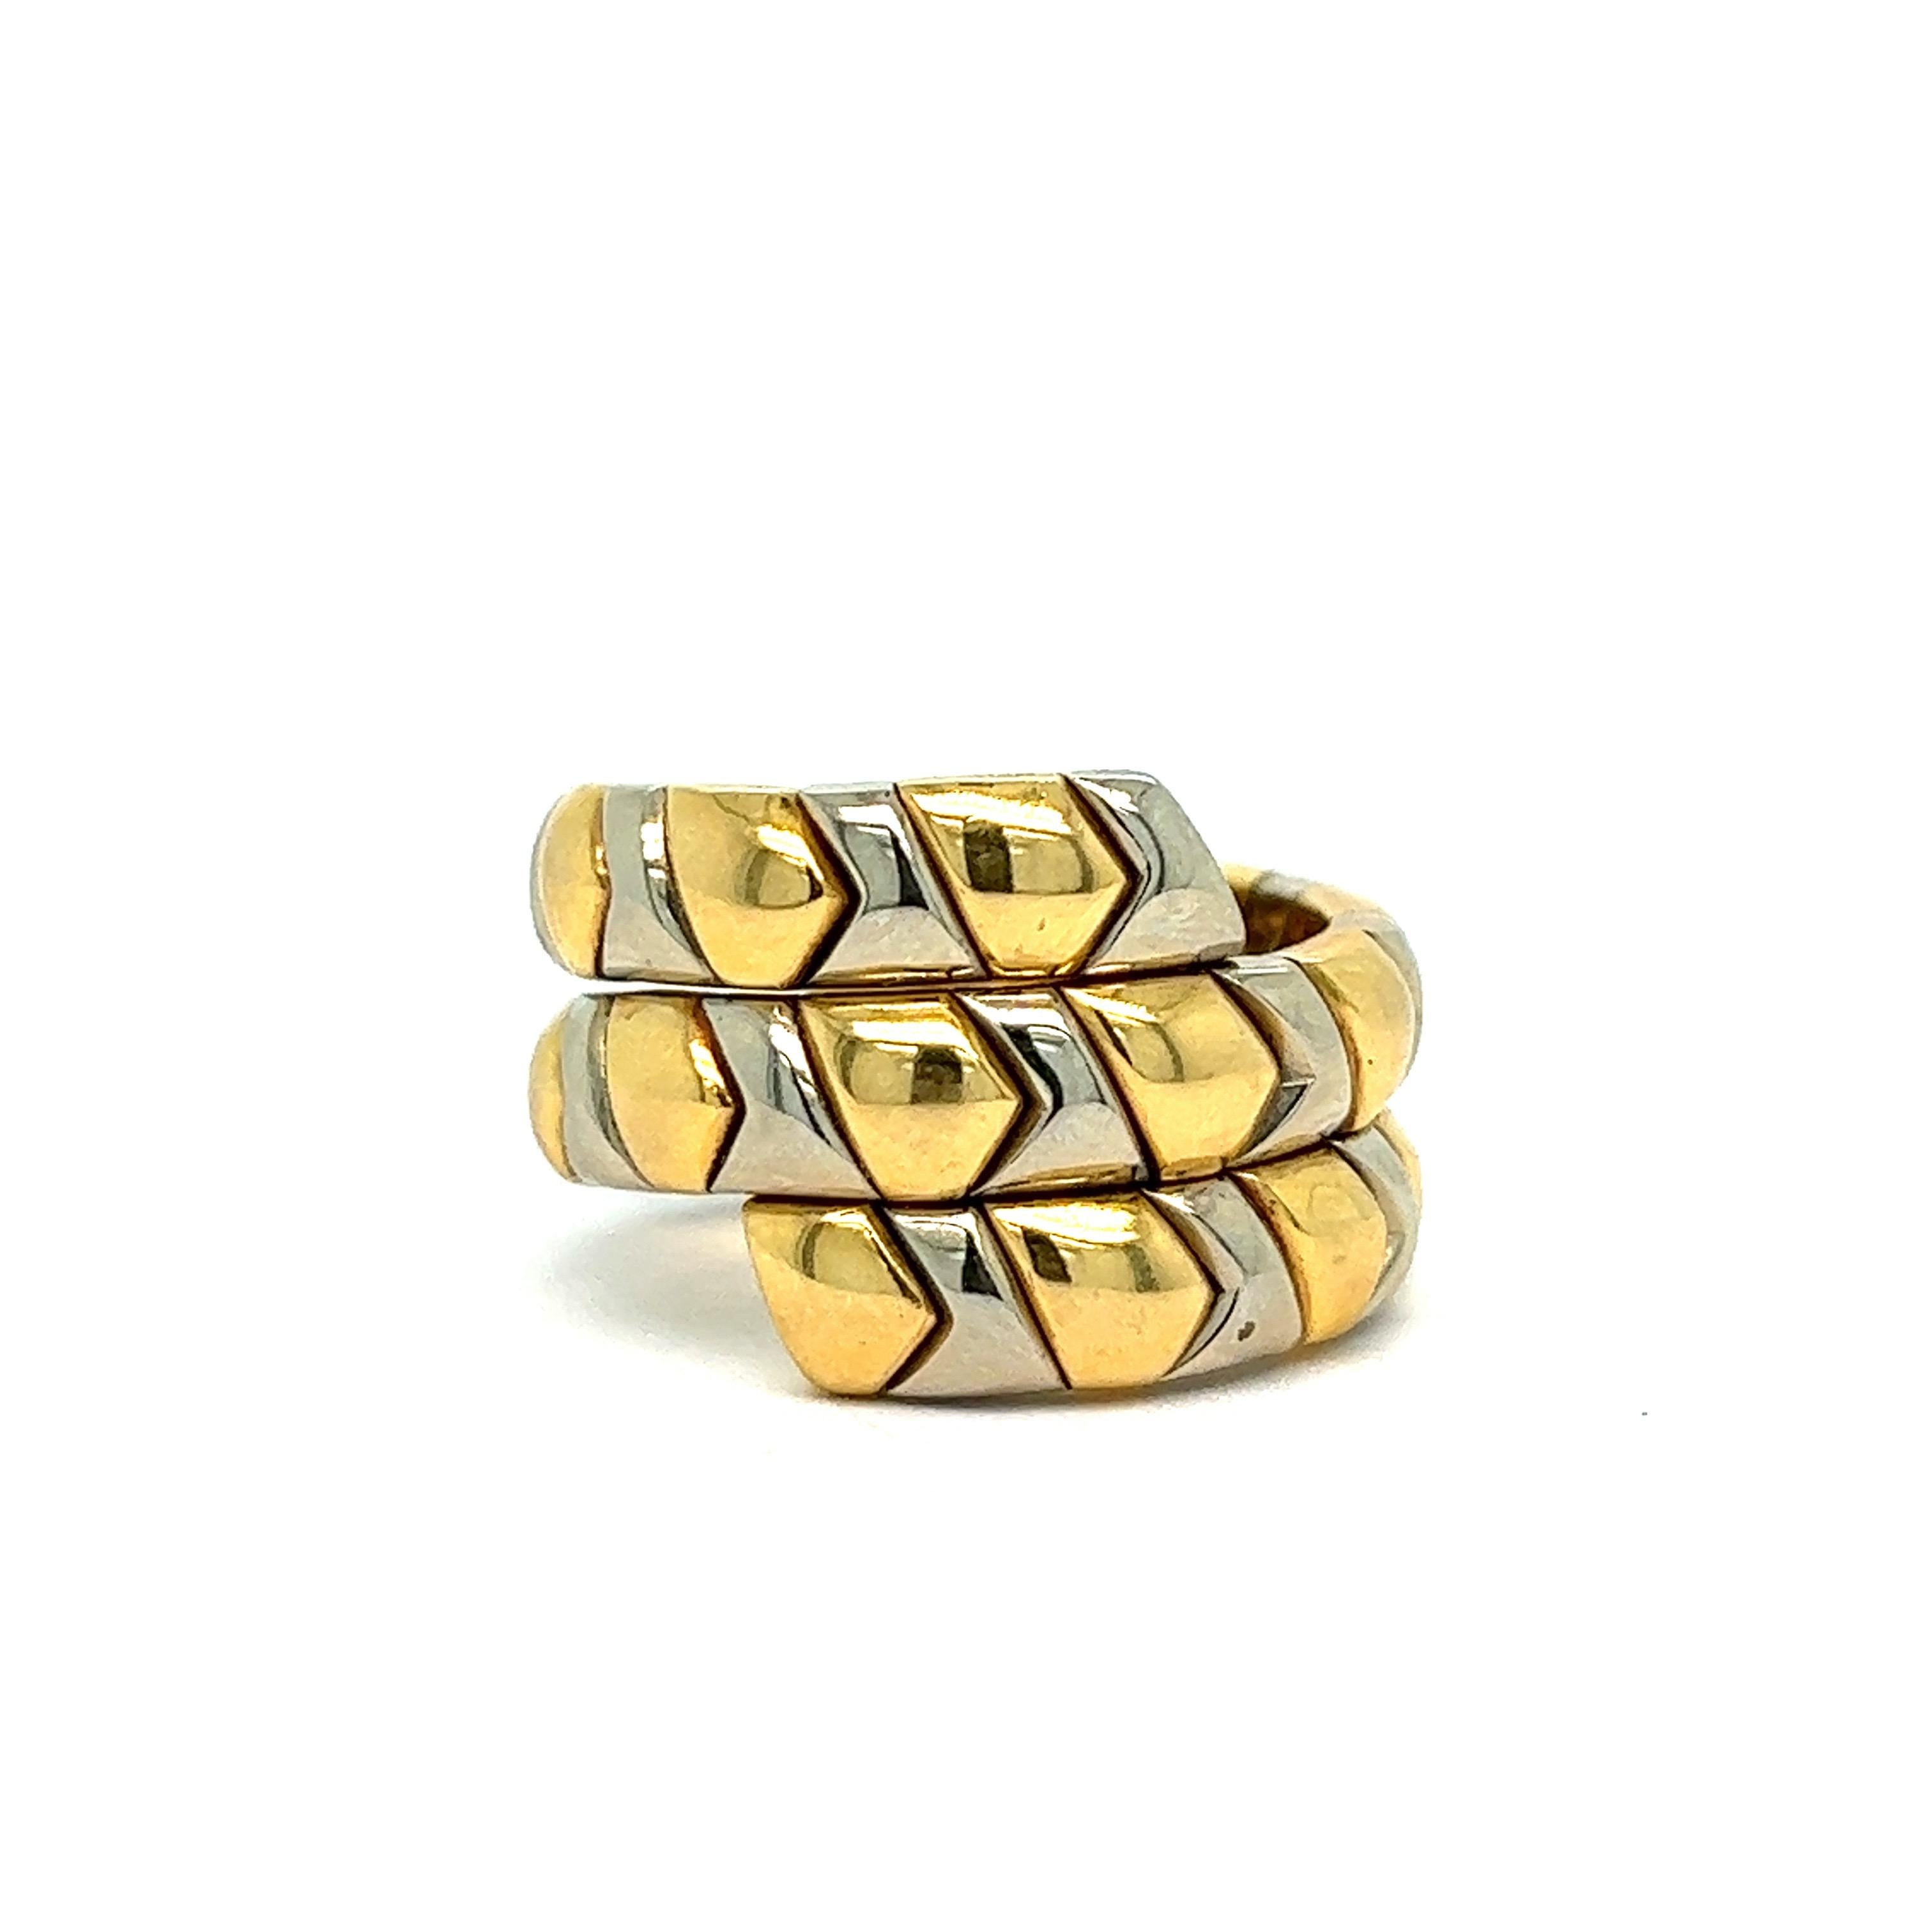 Bvlgari yellow and white gold wrap ring

18 karat yellow and white gold; marked Bvlgari, 750

Size: 6.25 US
Total weight: 16.5 grams